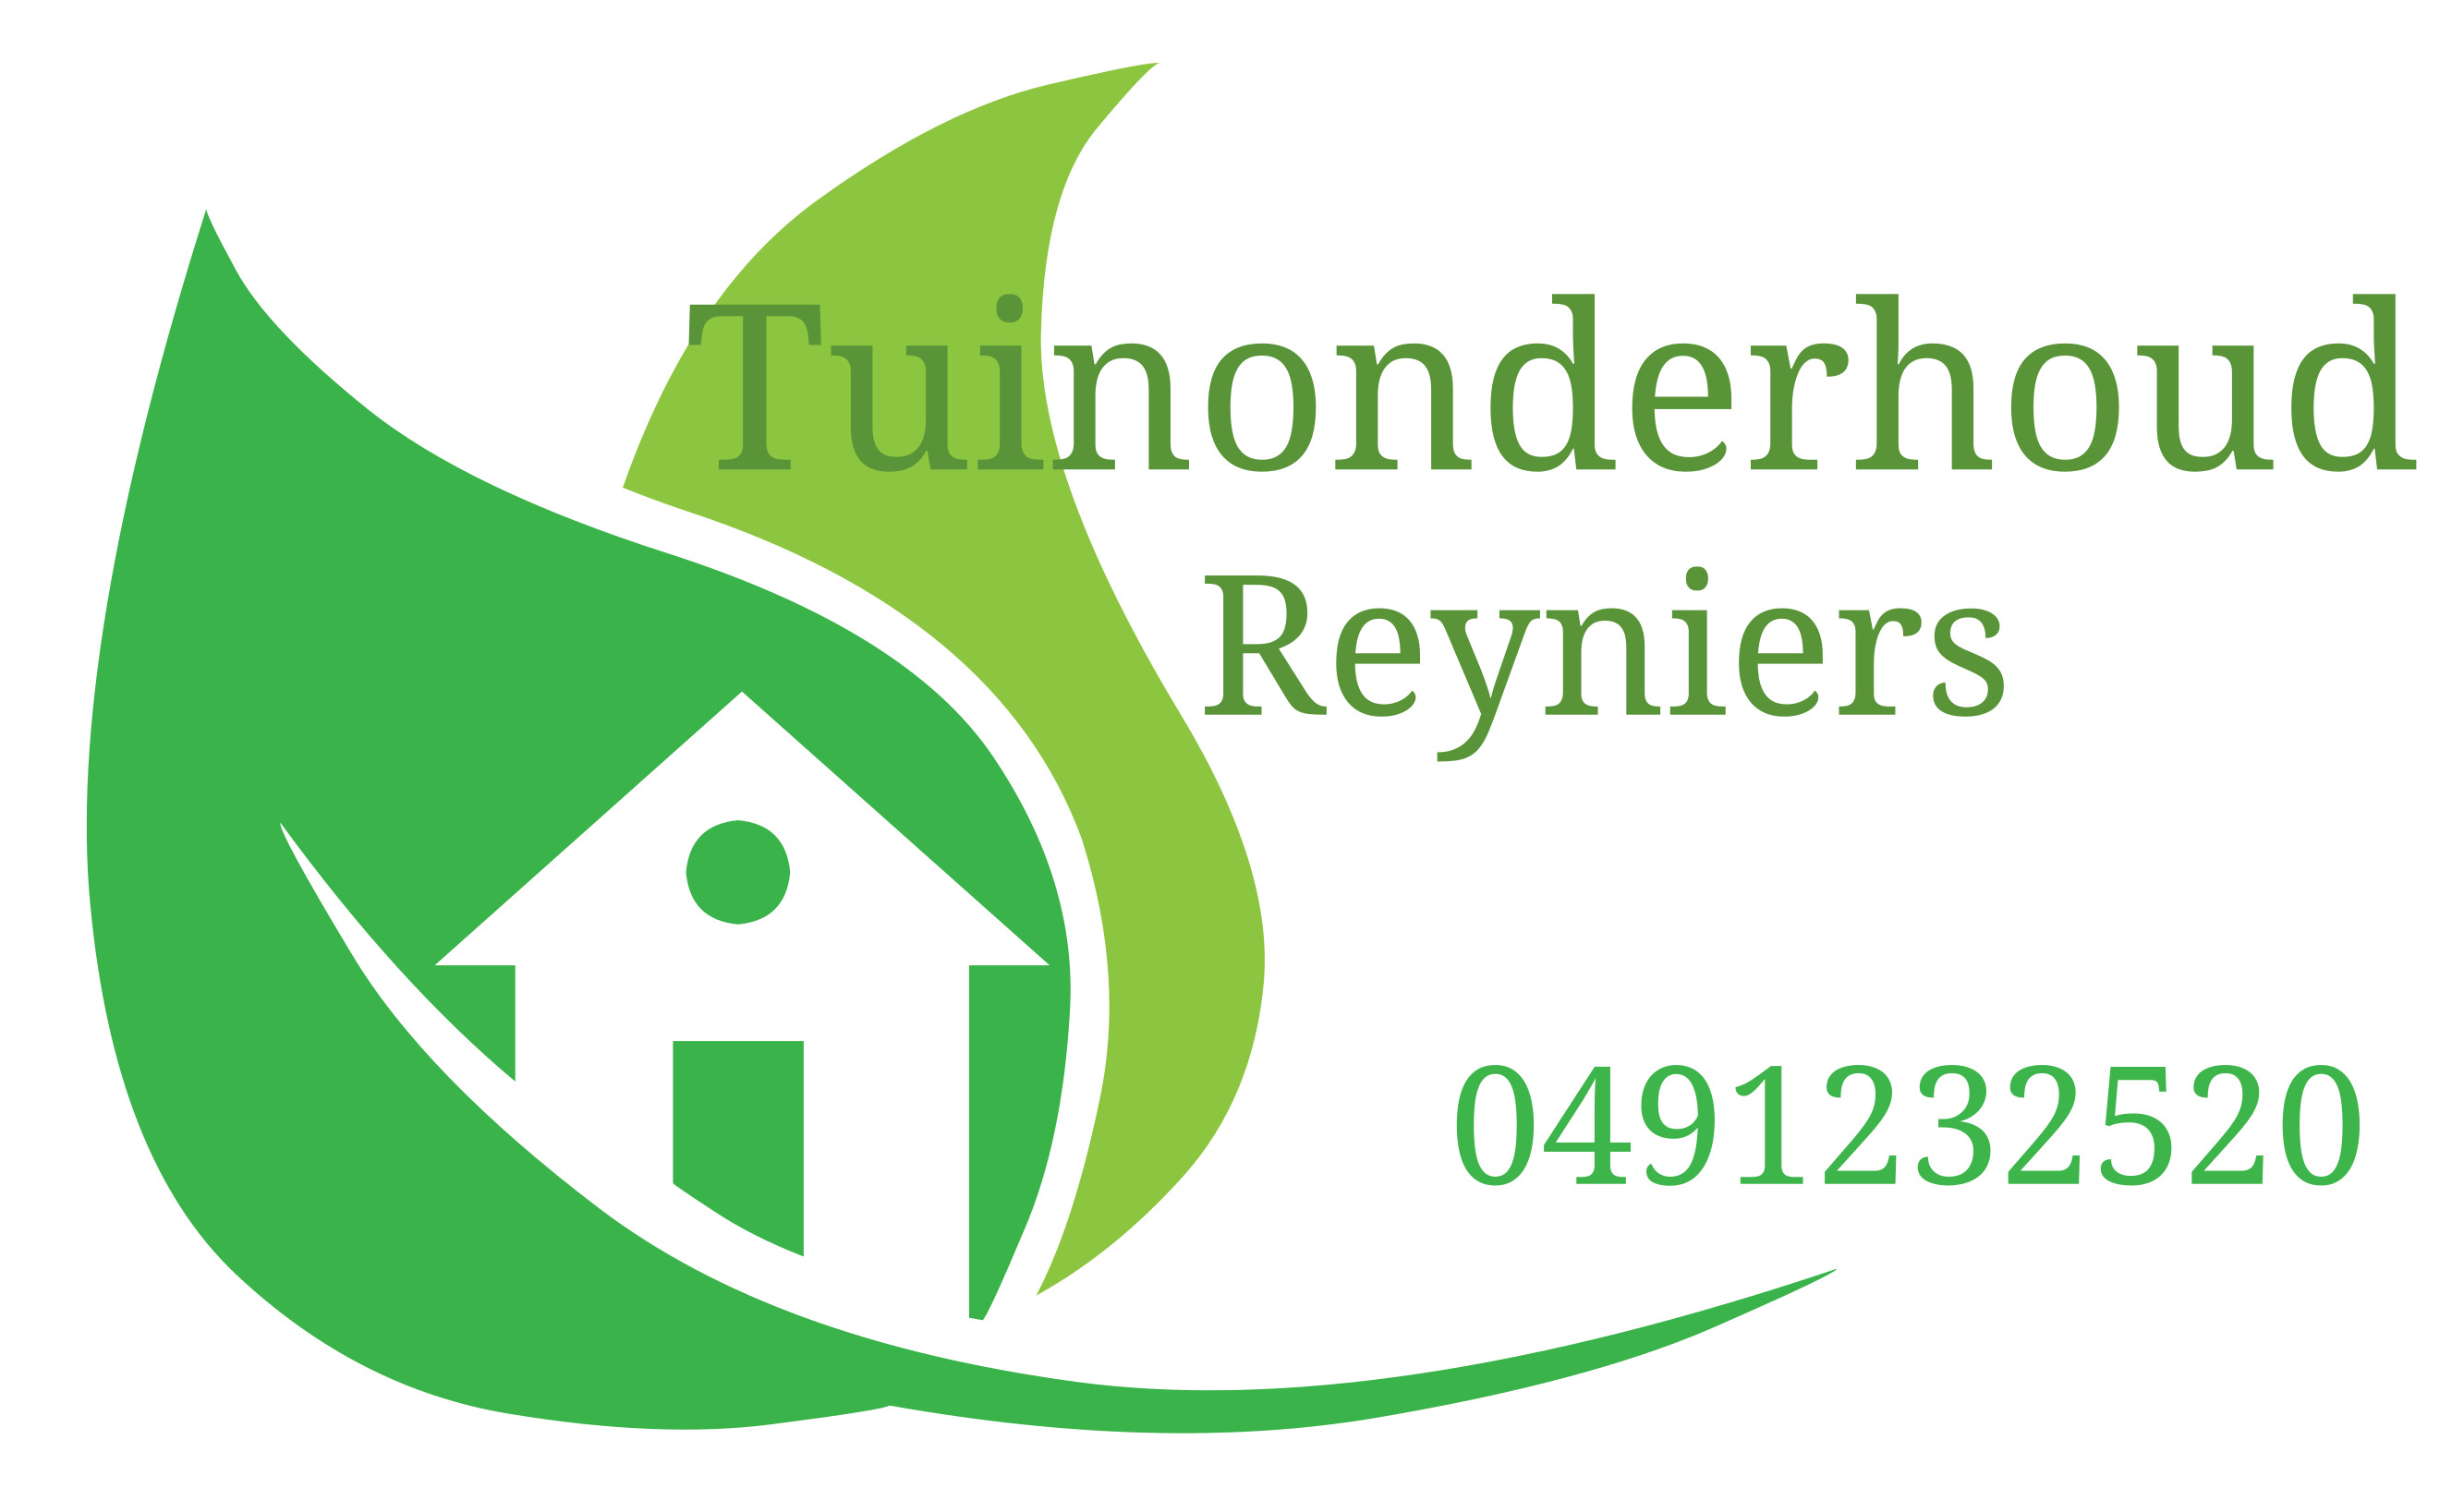 Tuinonderhoud Reyniers